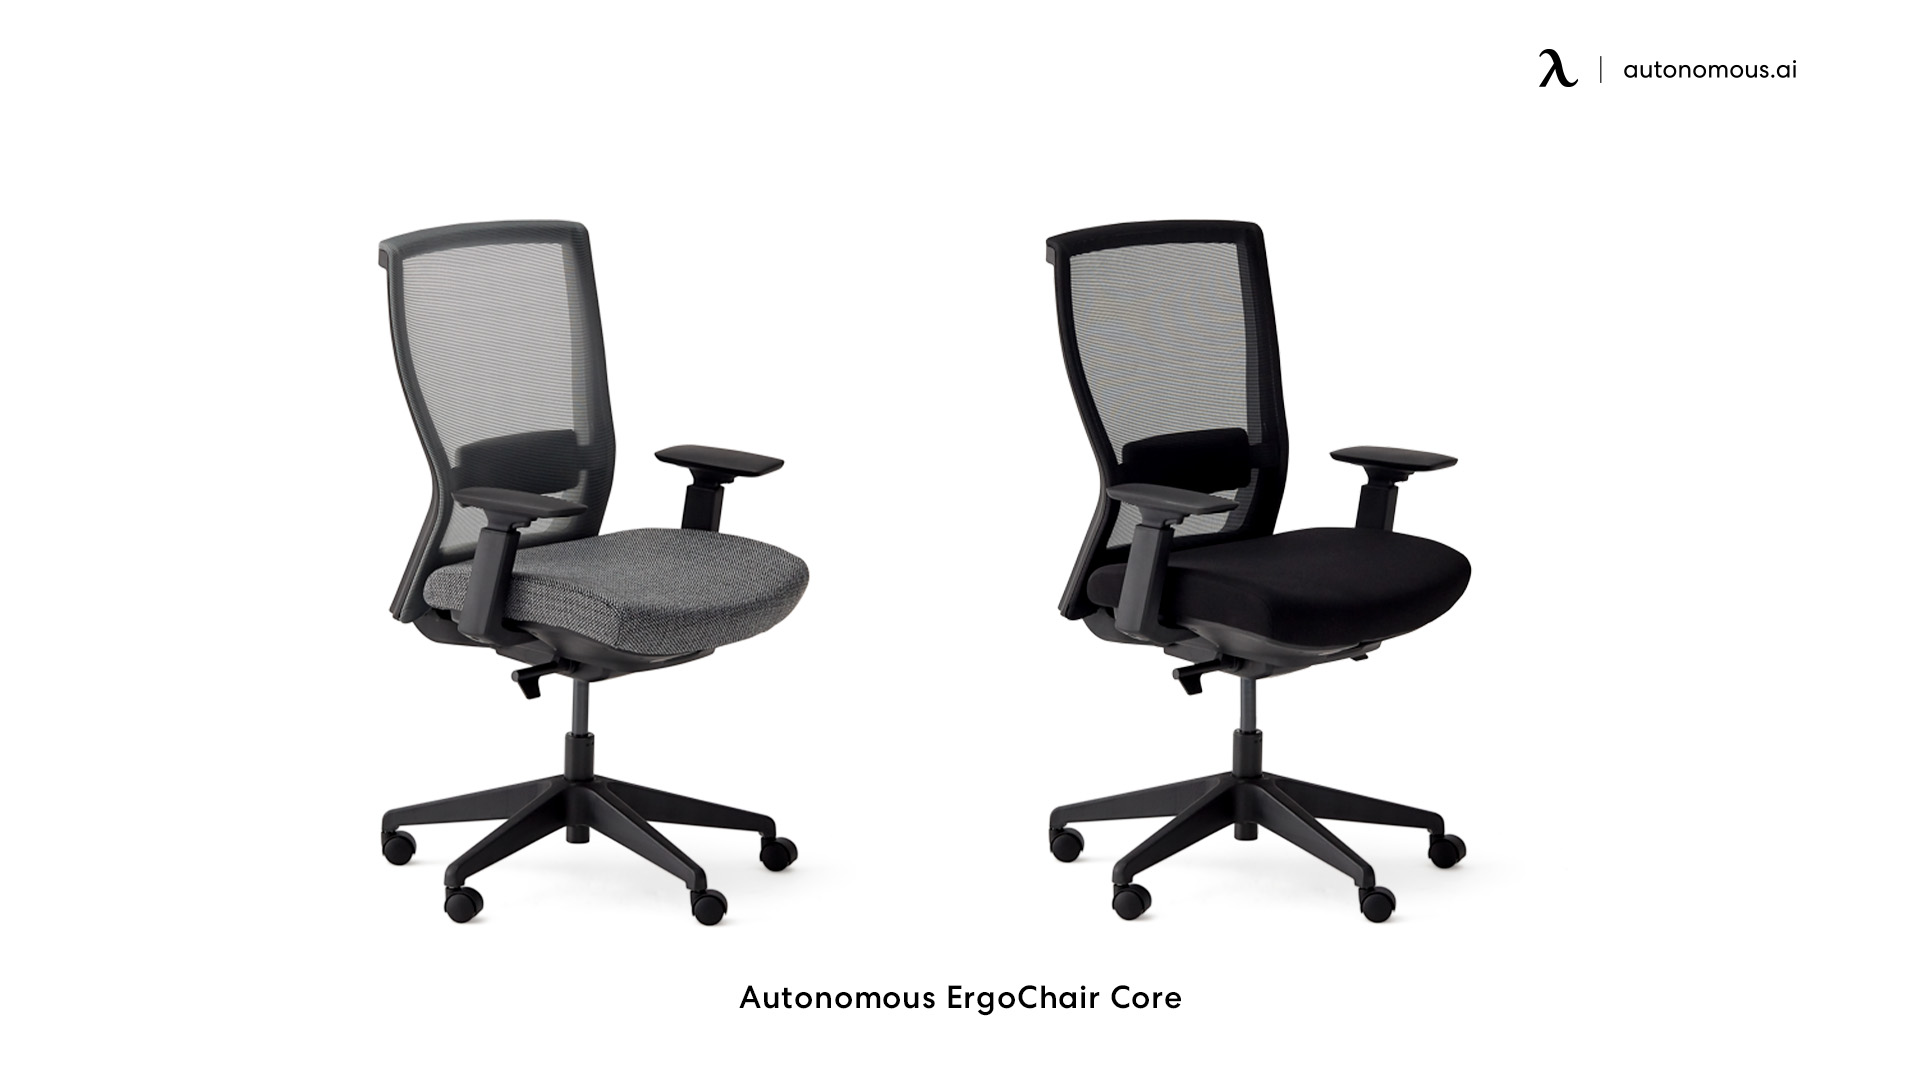 ErgoChair Core stylish ergonomic office chair